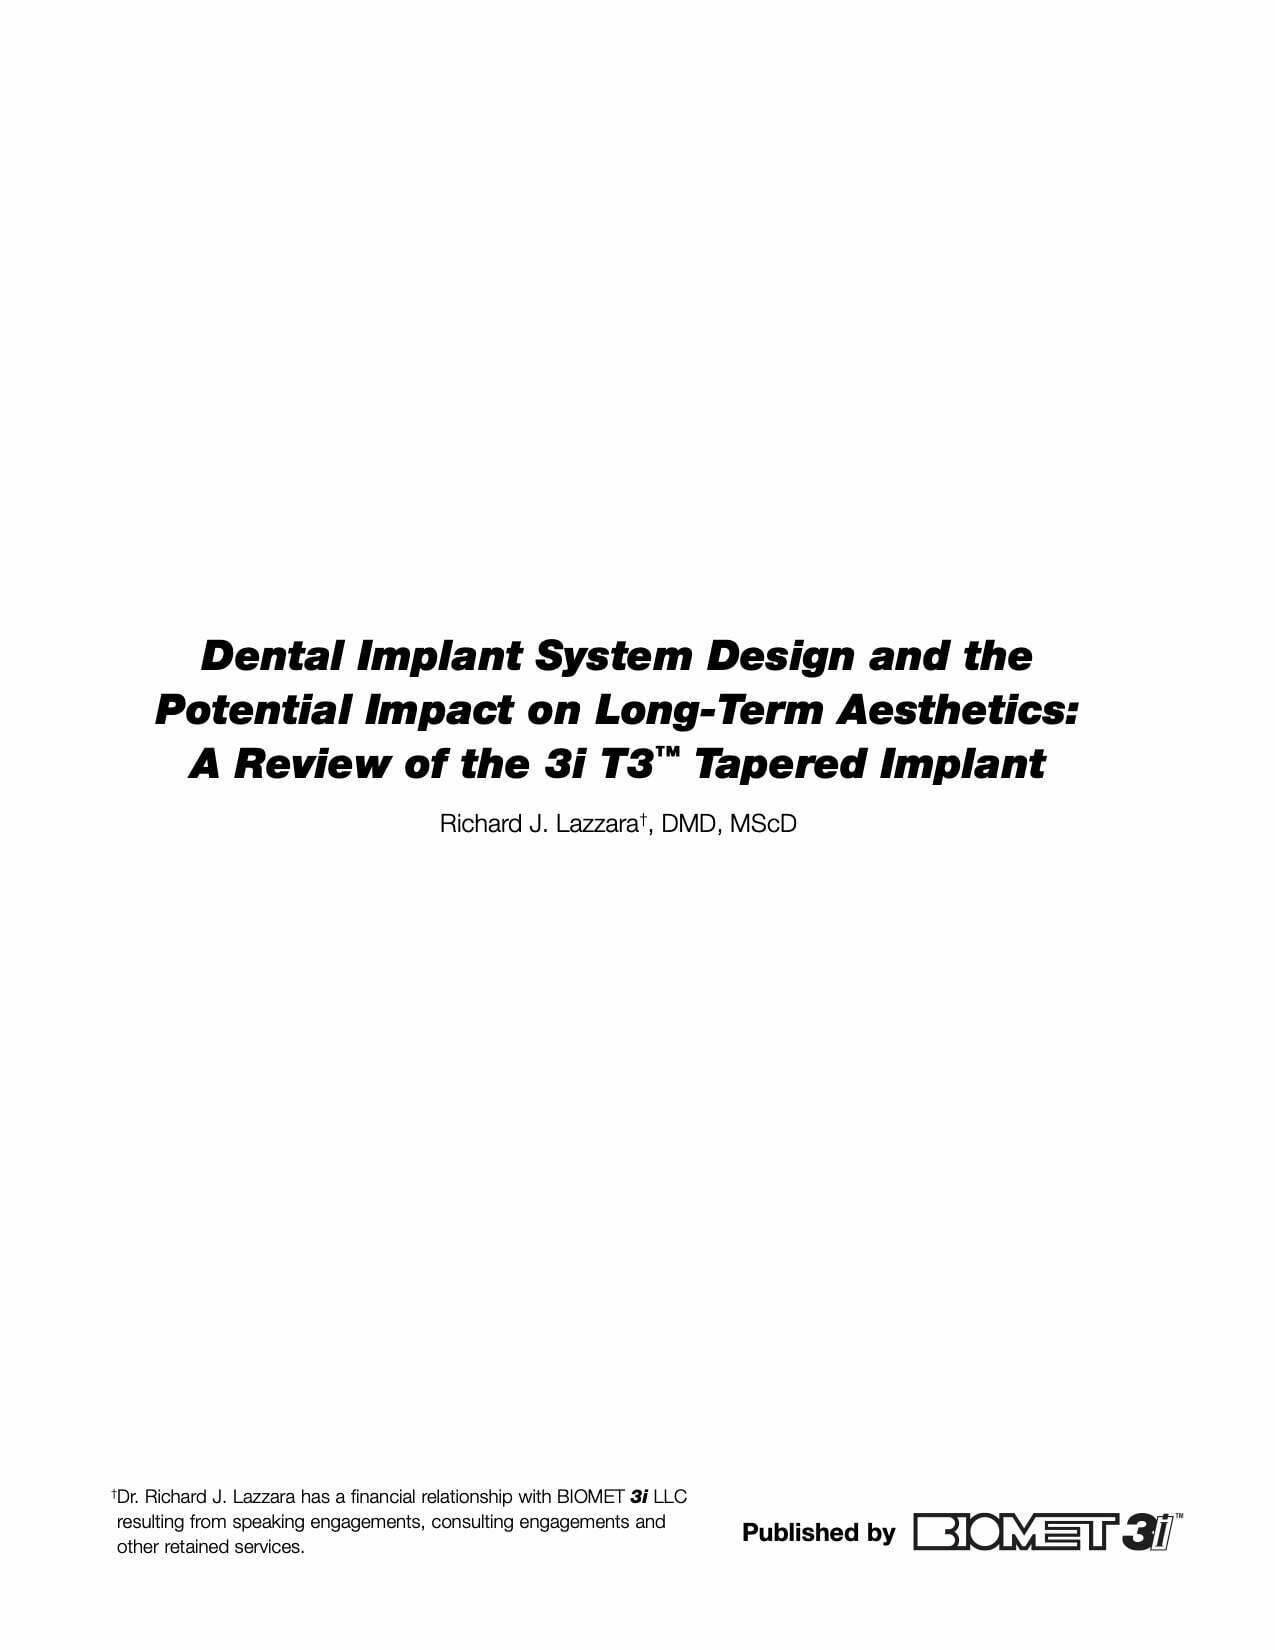 El diseño del sistema de implante dental y su posible influencia sobre los resultados estéticos a largo plazo: una revisión del implante cónico 3i T3.